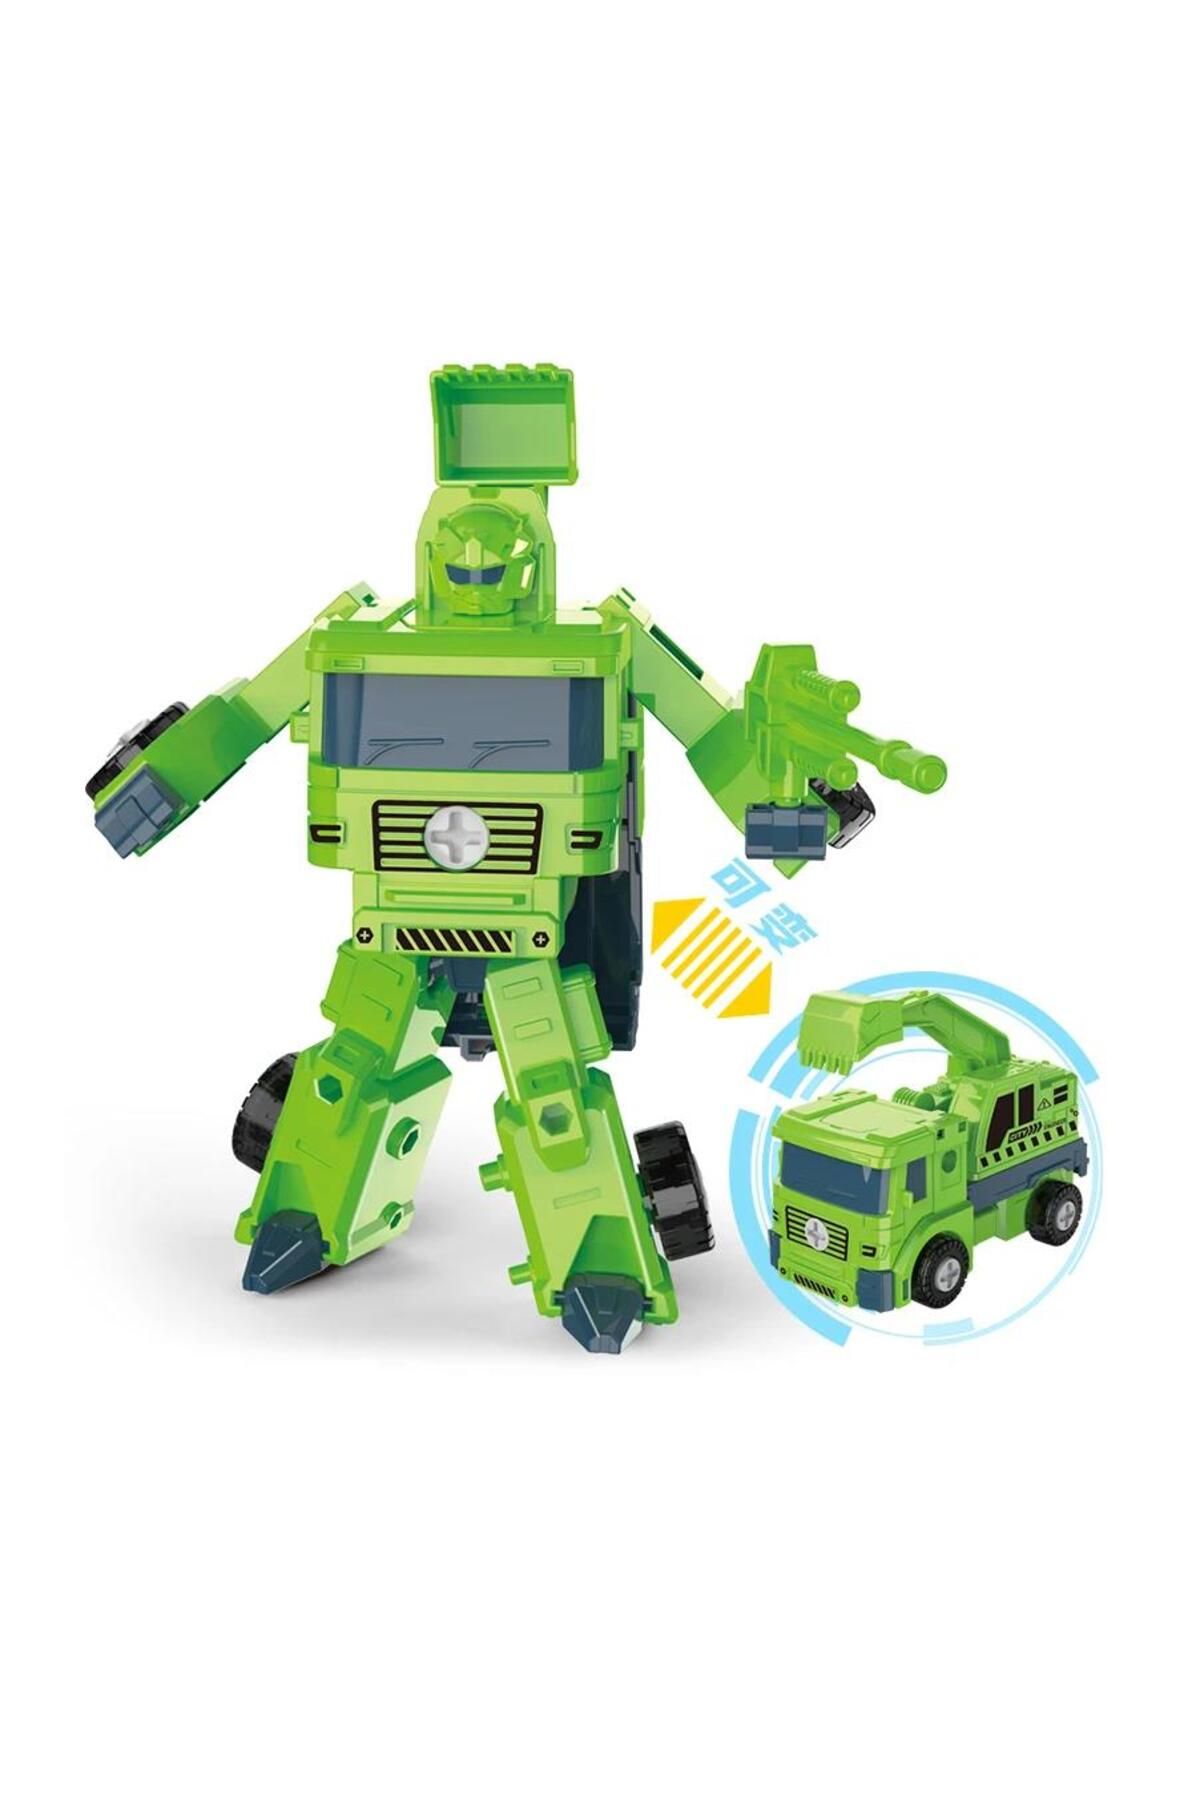 Genel Markalar Dıy - Robota Dönüşen Sök-tak Araba - Lb-998 - Yeşil (LİSİNYA)